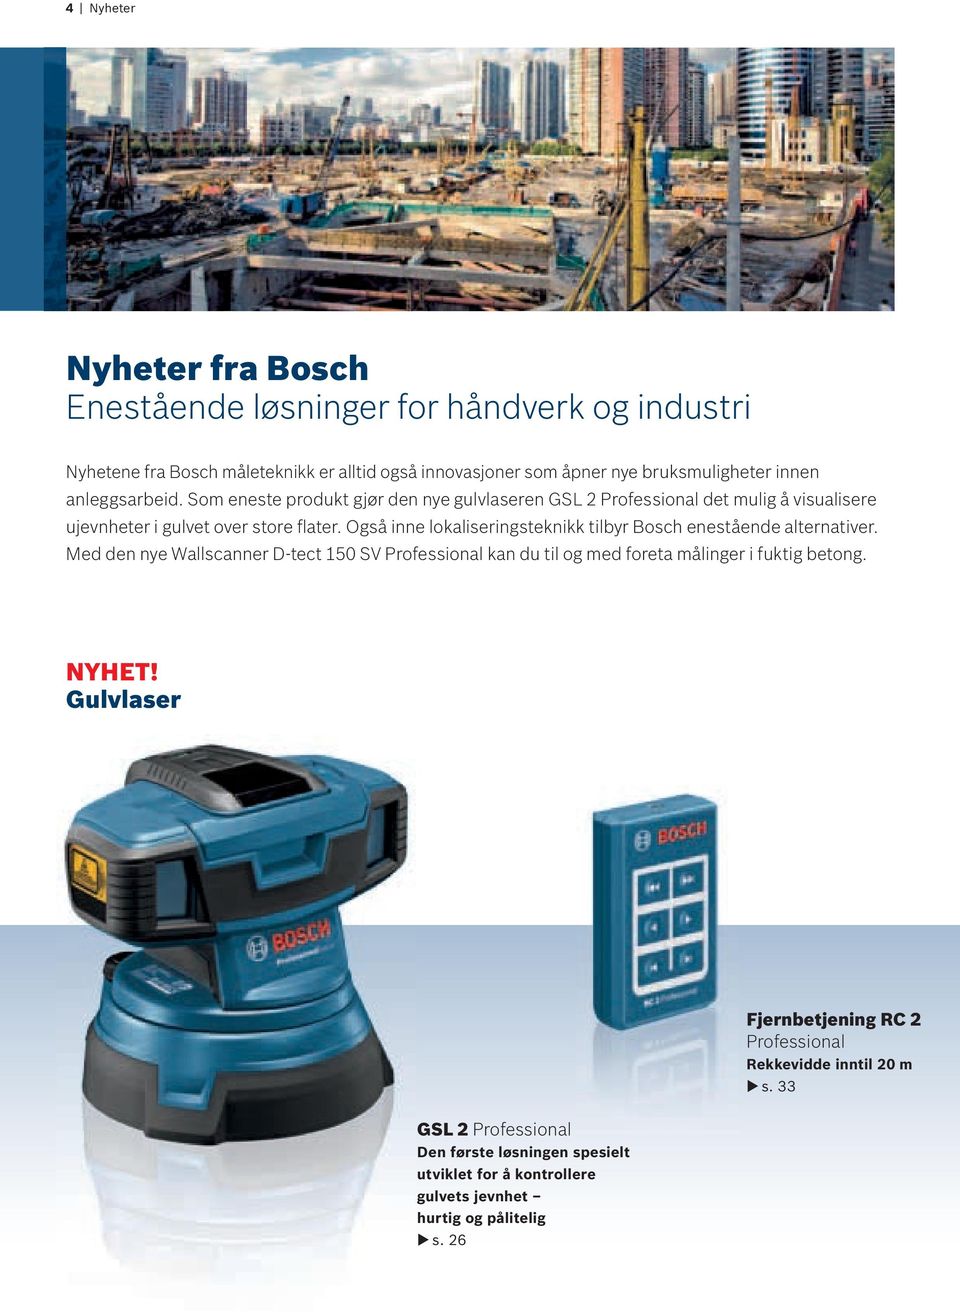 Også inne lokaliseringsteknikk tilbyr Bosch enestående alternativer. Med den nye Wallscanner D-tect 150 SV kan du til og med foreta målinger i fuktig betong.